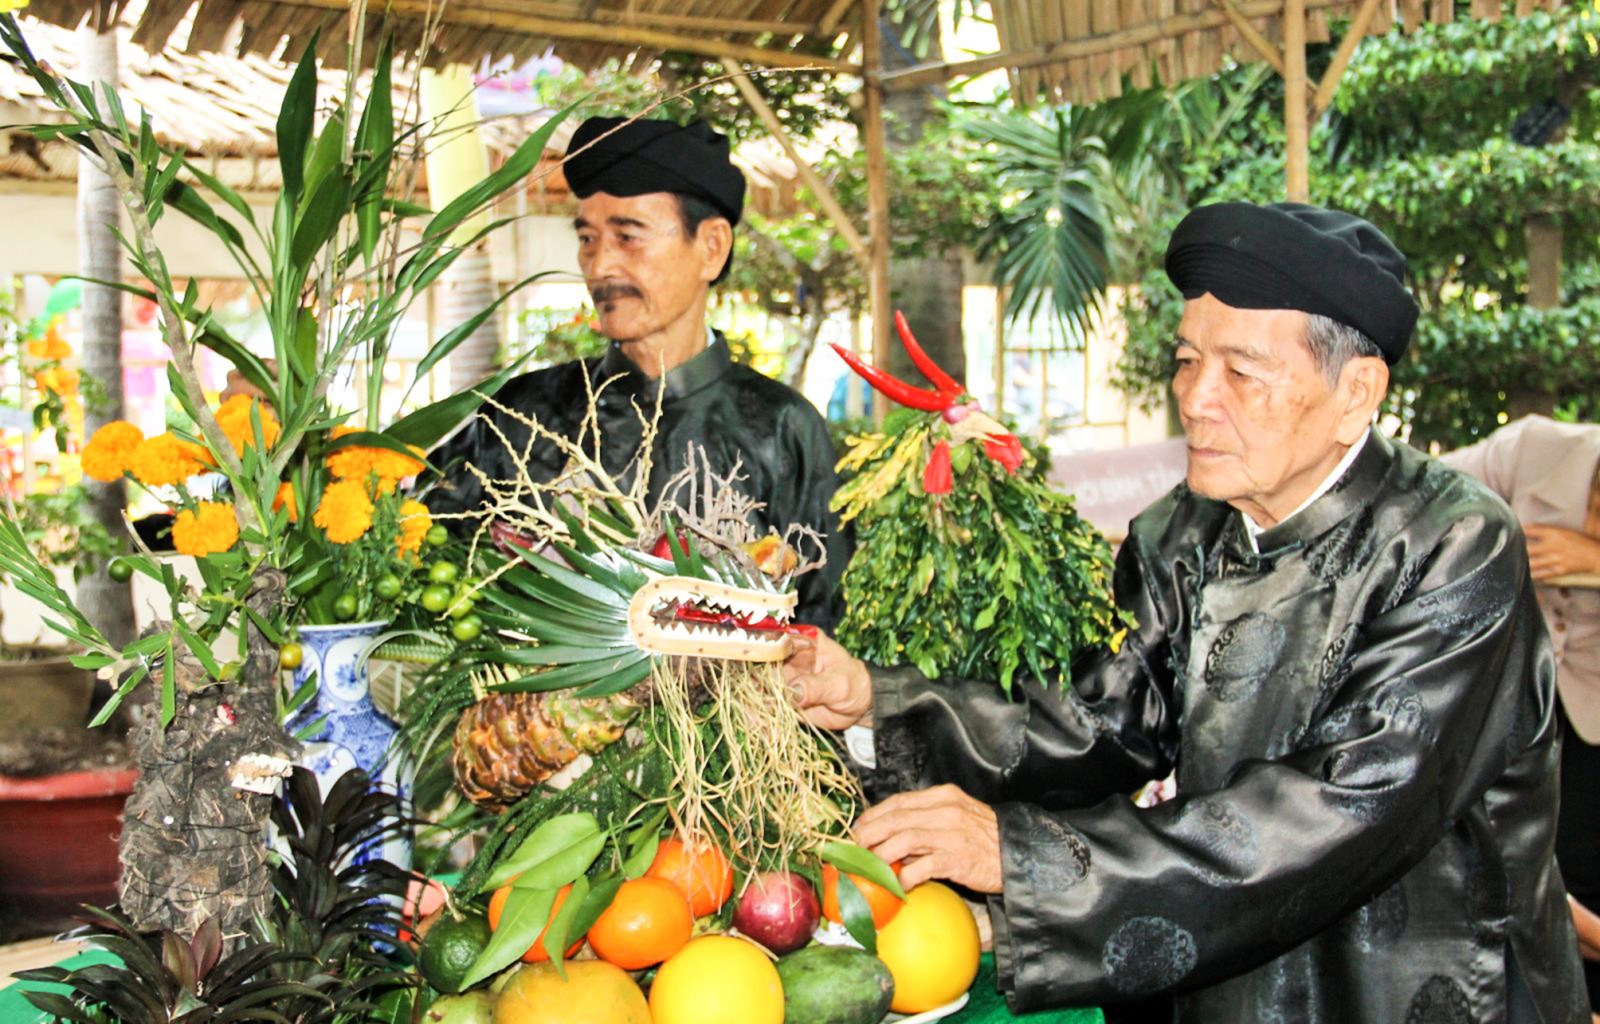 Ông Chín Hoằng (phải) và ông Năm Mới trình diễn trưng bày mâm trái cây, hoa quả ngày Tết tại chương trình “Sắc xuân miệt vườn”. Ảnh: ĐĂNG HUỲNH